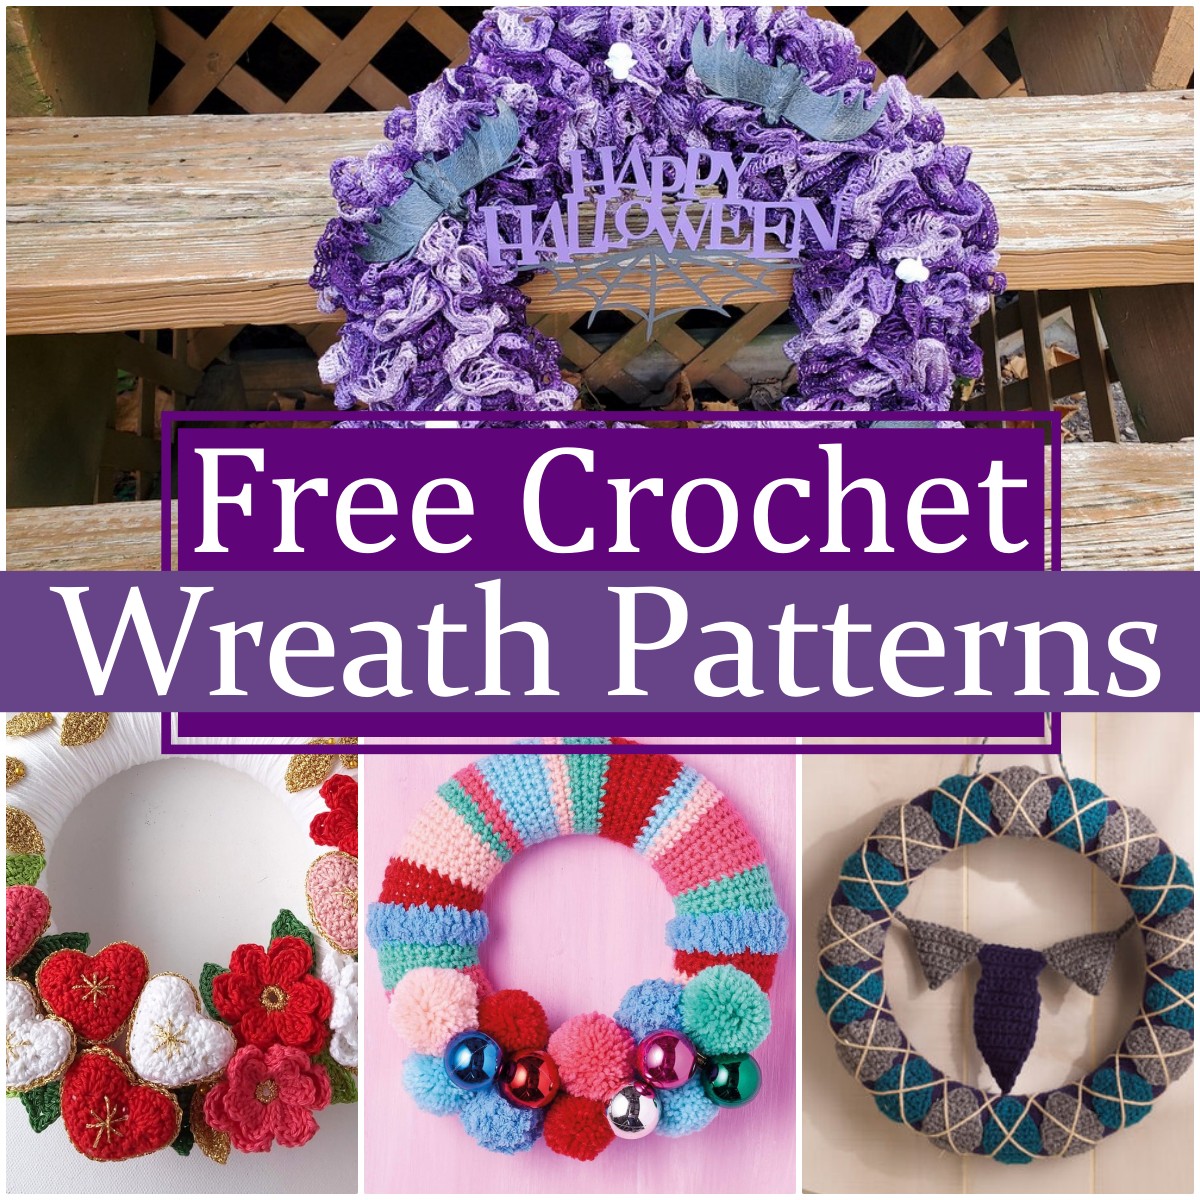 Free Crochet Wreath Patterns 